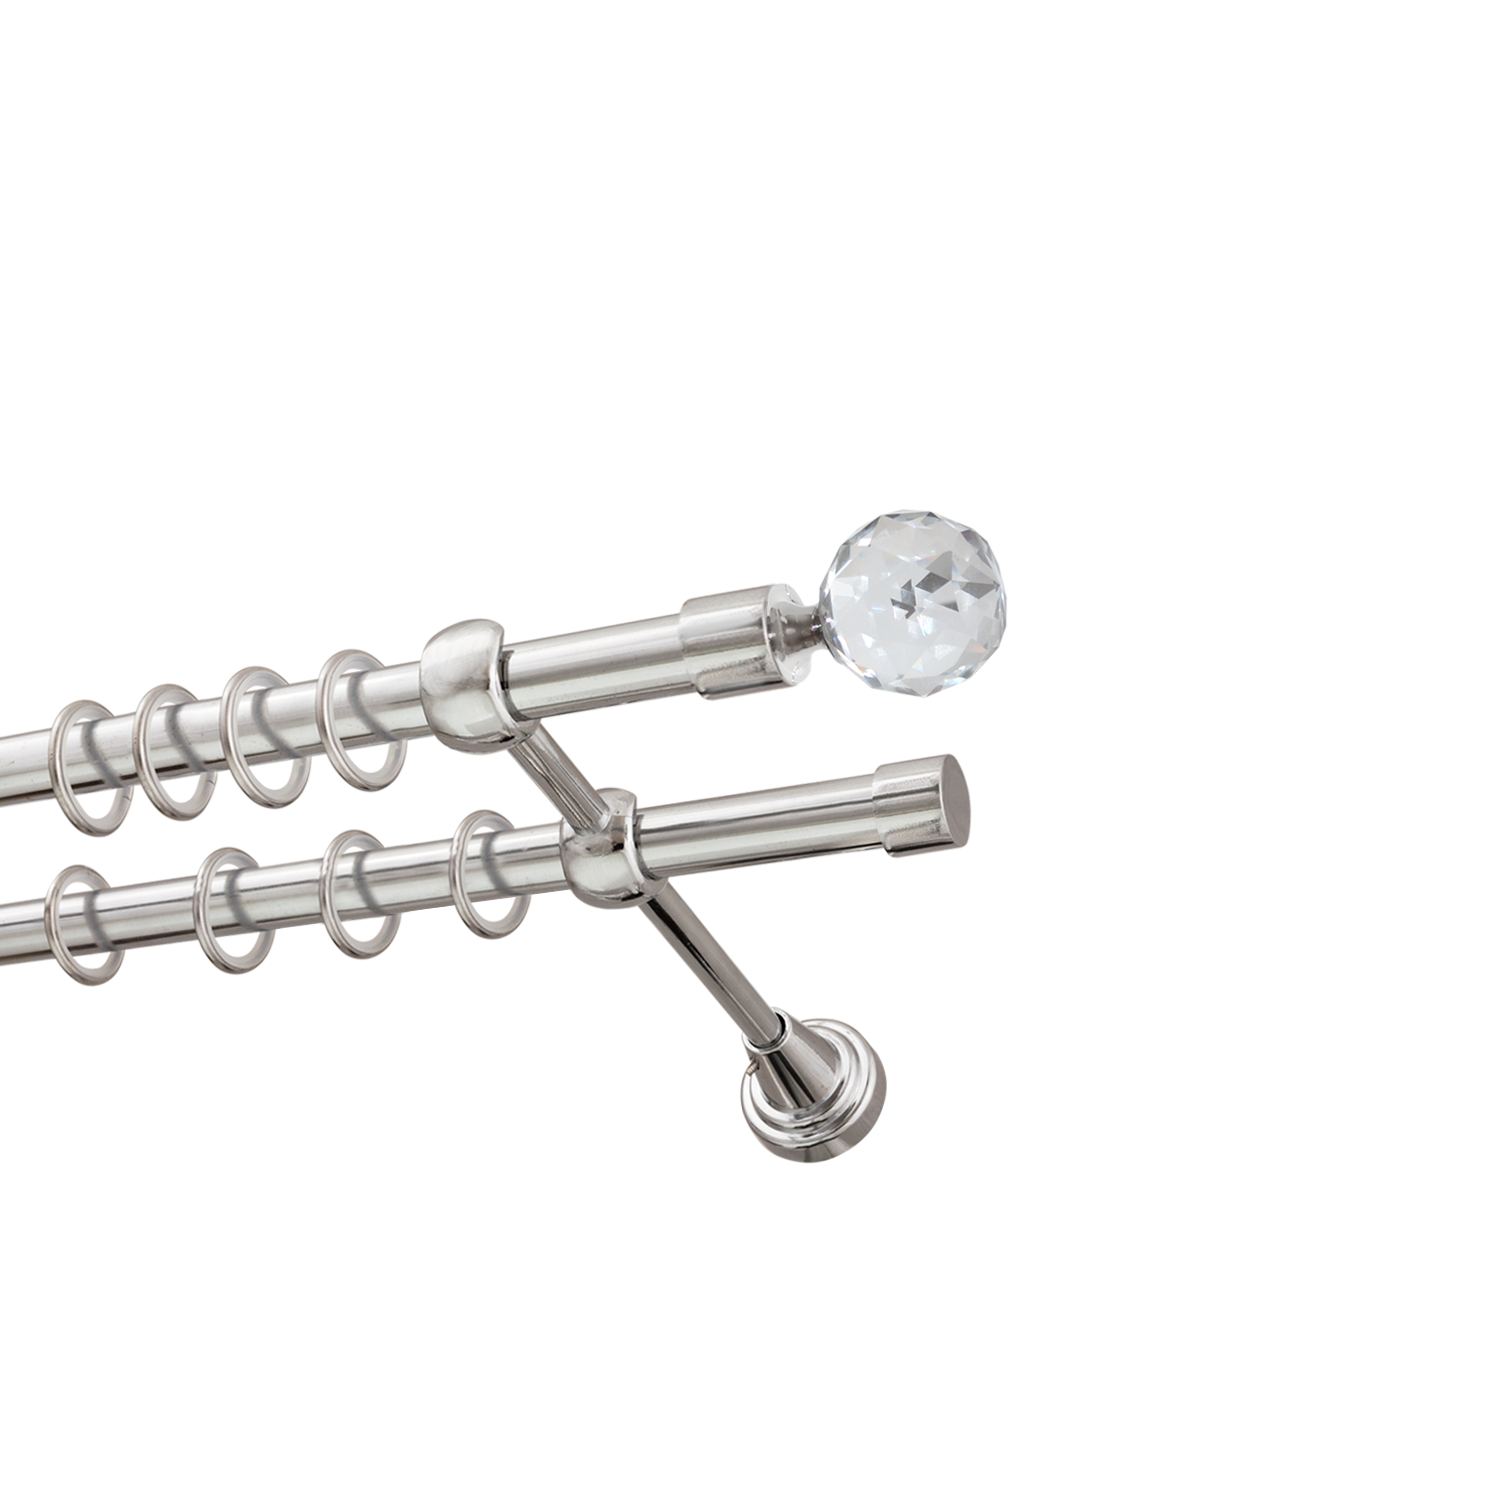 Металлический карниз для штор Карат, двухрядный 16/16 мм, серебро, гладкая штанга, длина 160 см - фото Wikidecor.ru